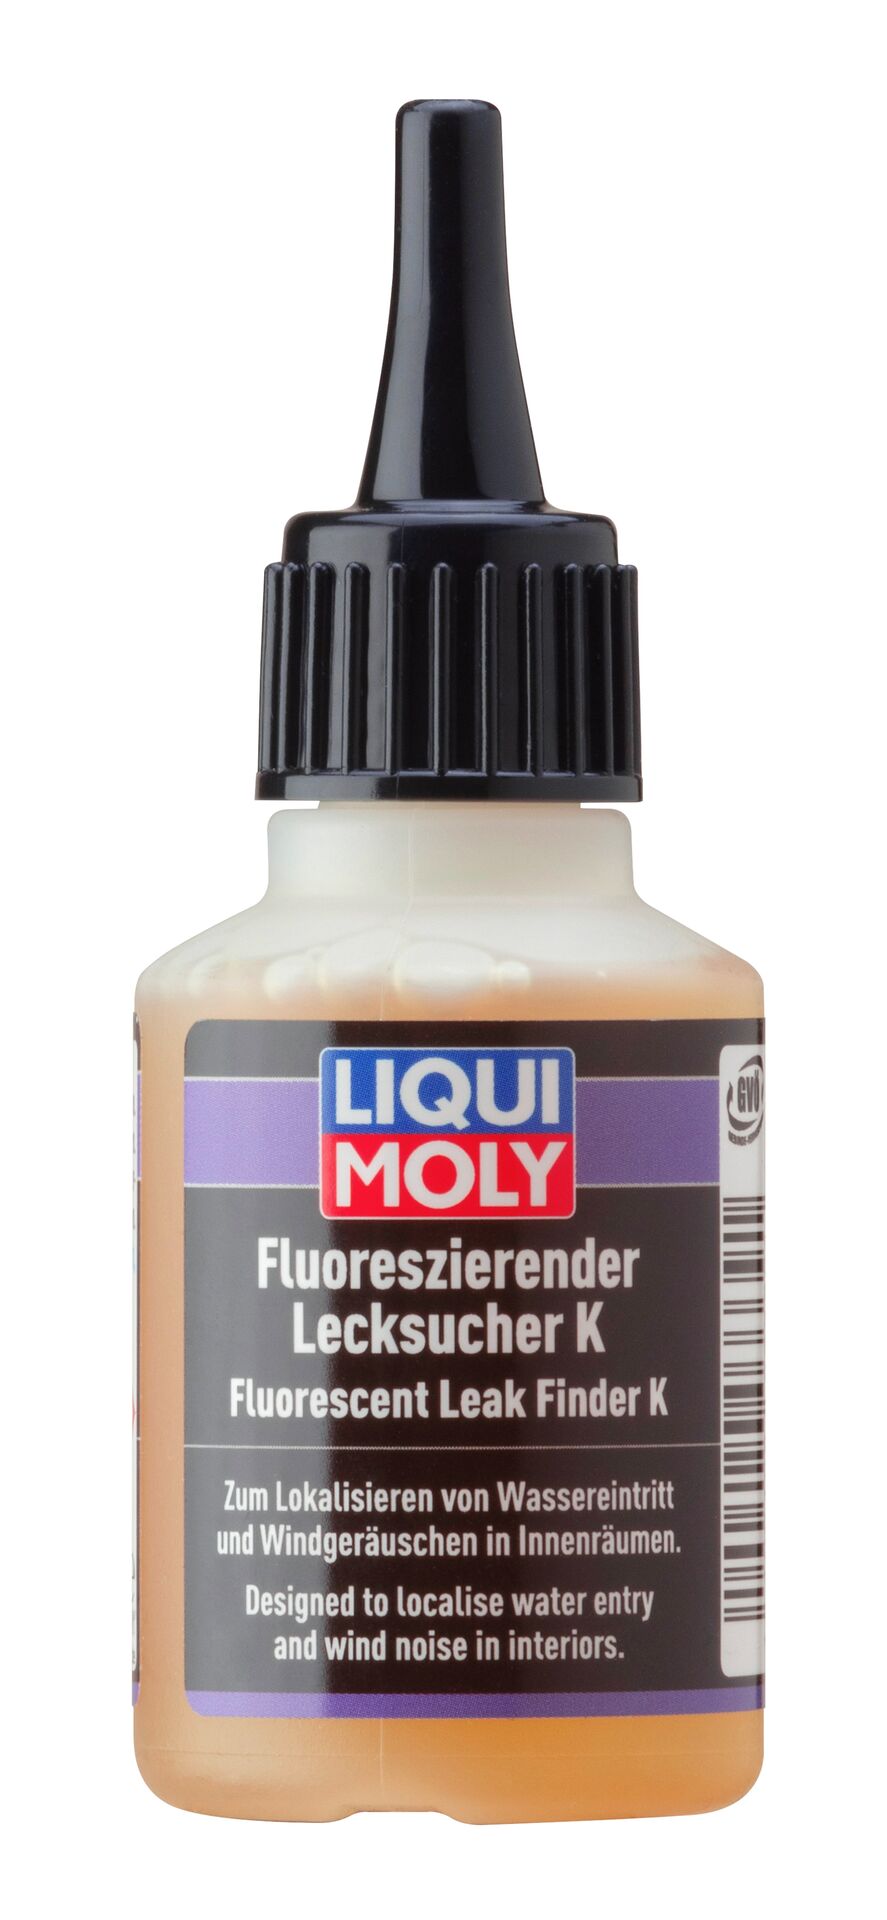 Liqui Moly Fluoreszierender Lecksucher K Fluorescent Leak Finder 50 ml